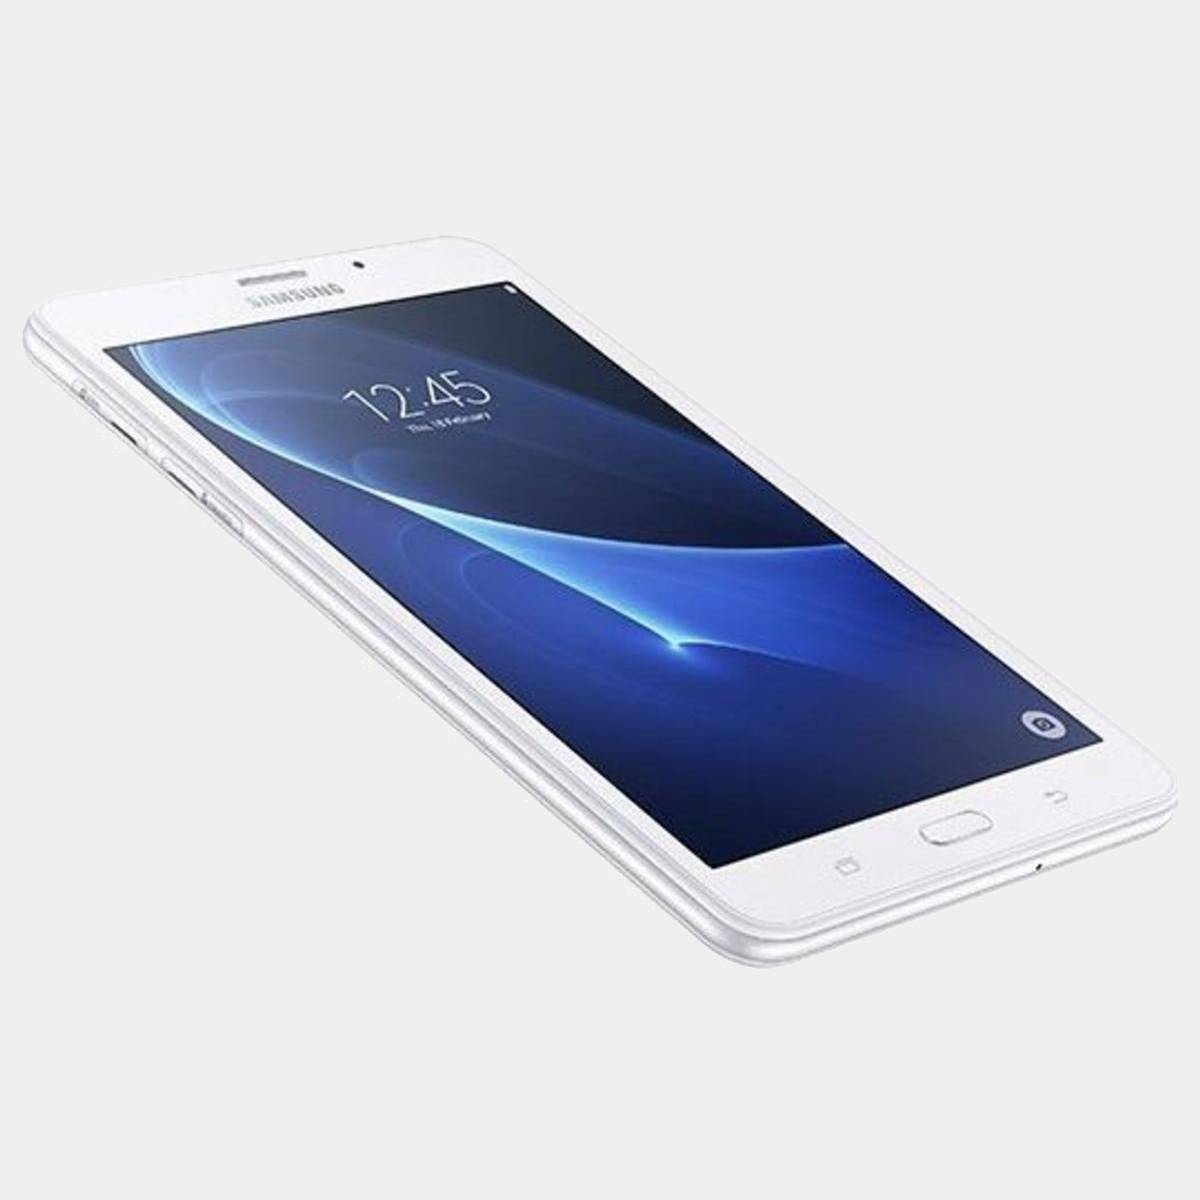 Samsung Galaxy Tab A T585 blanco 10.1 4G 16GB